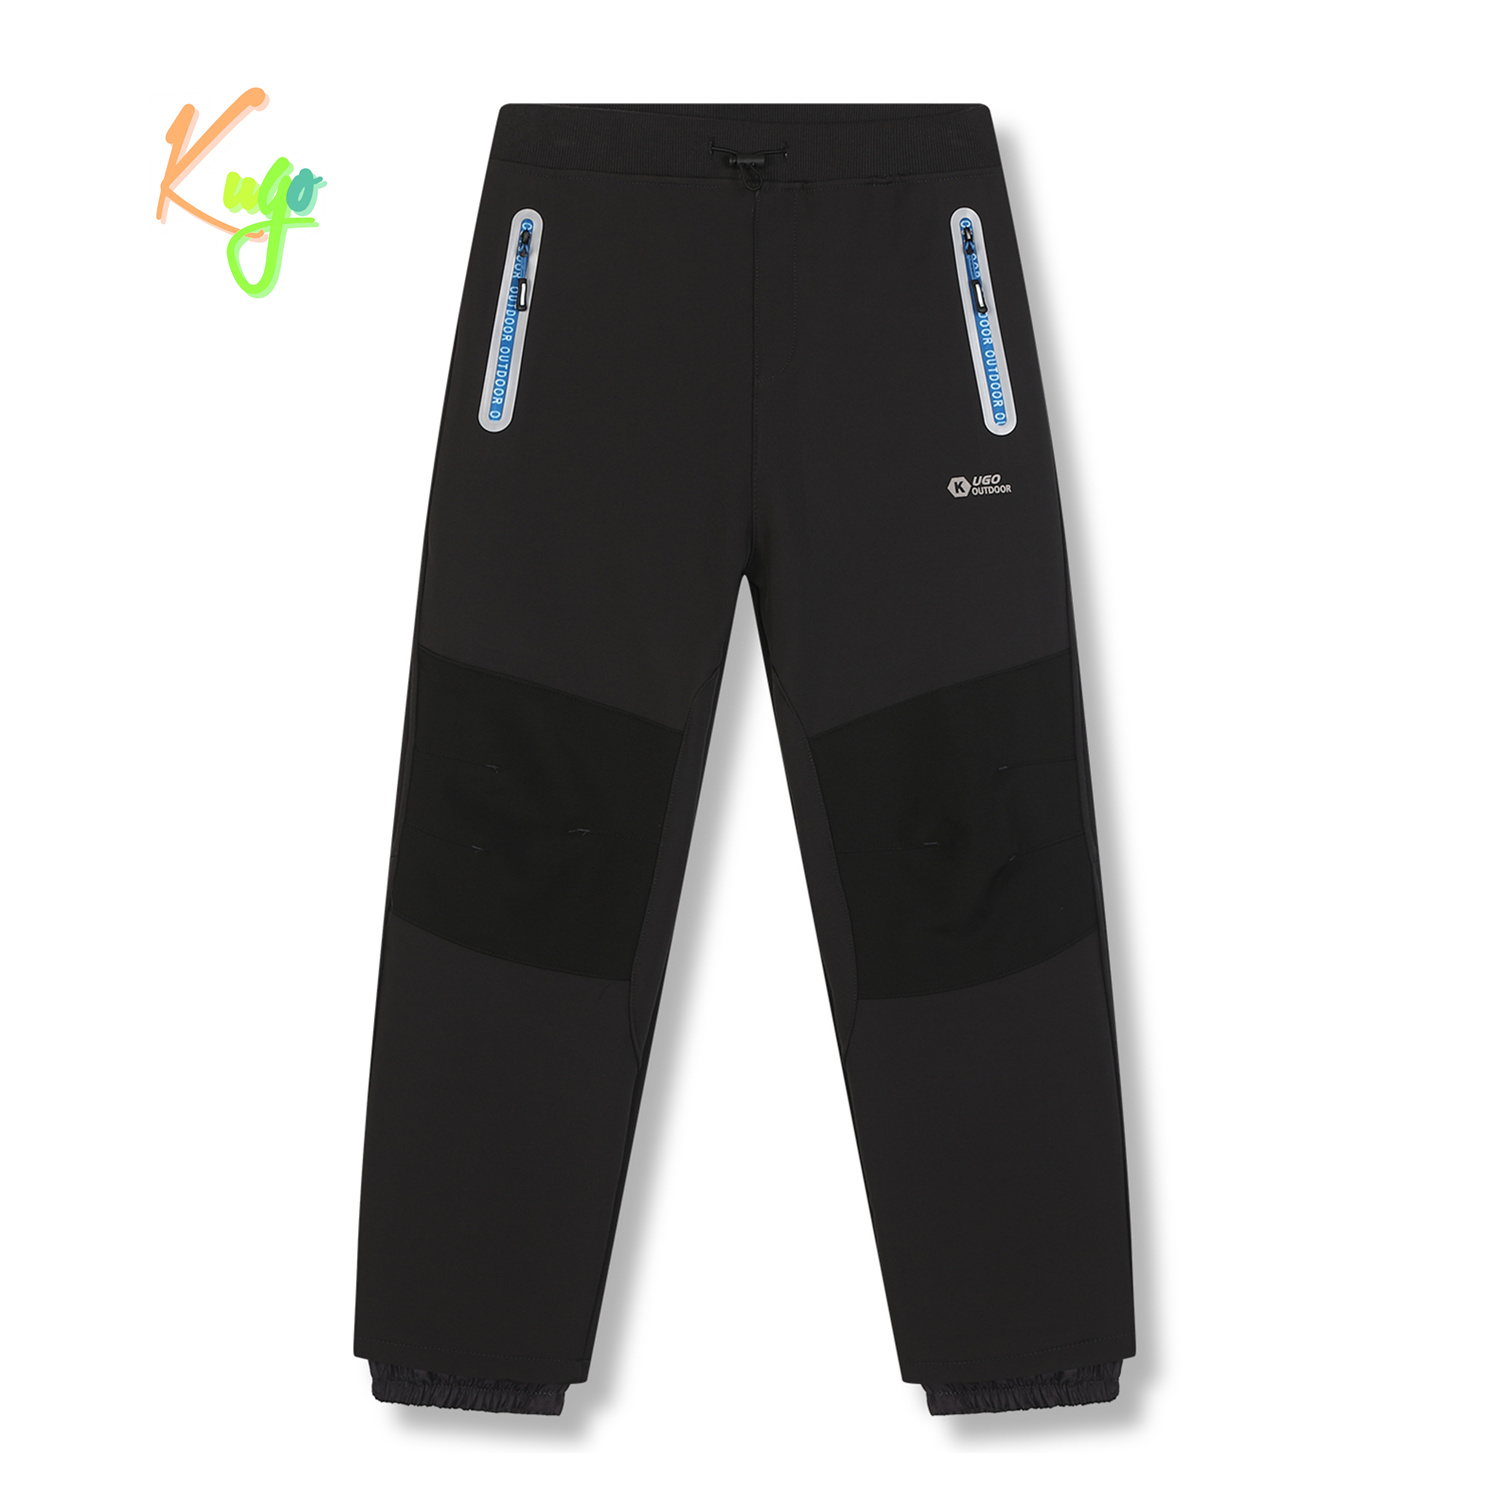 Chlapecké softshellové kalhoty, zateplené - KUGO HK5629, tmavě šedá / modré zipy Barva: Šedá, Velikost: 176